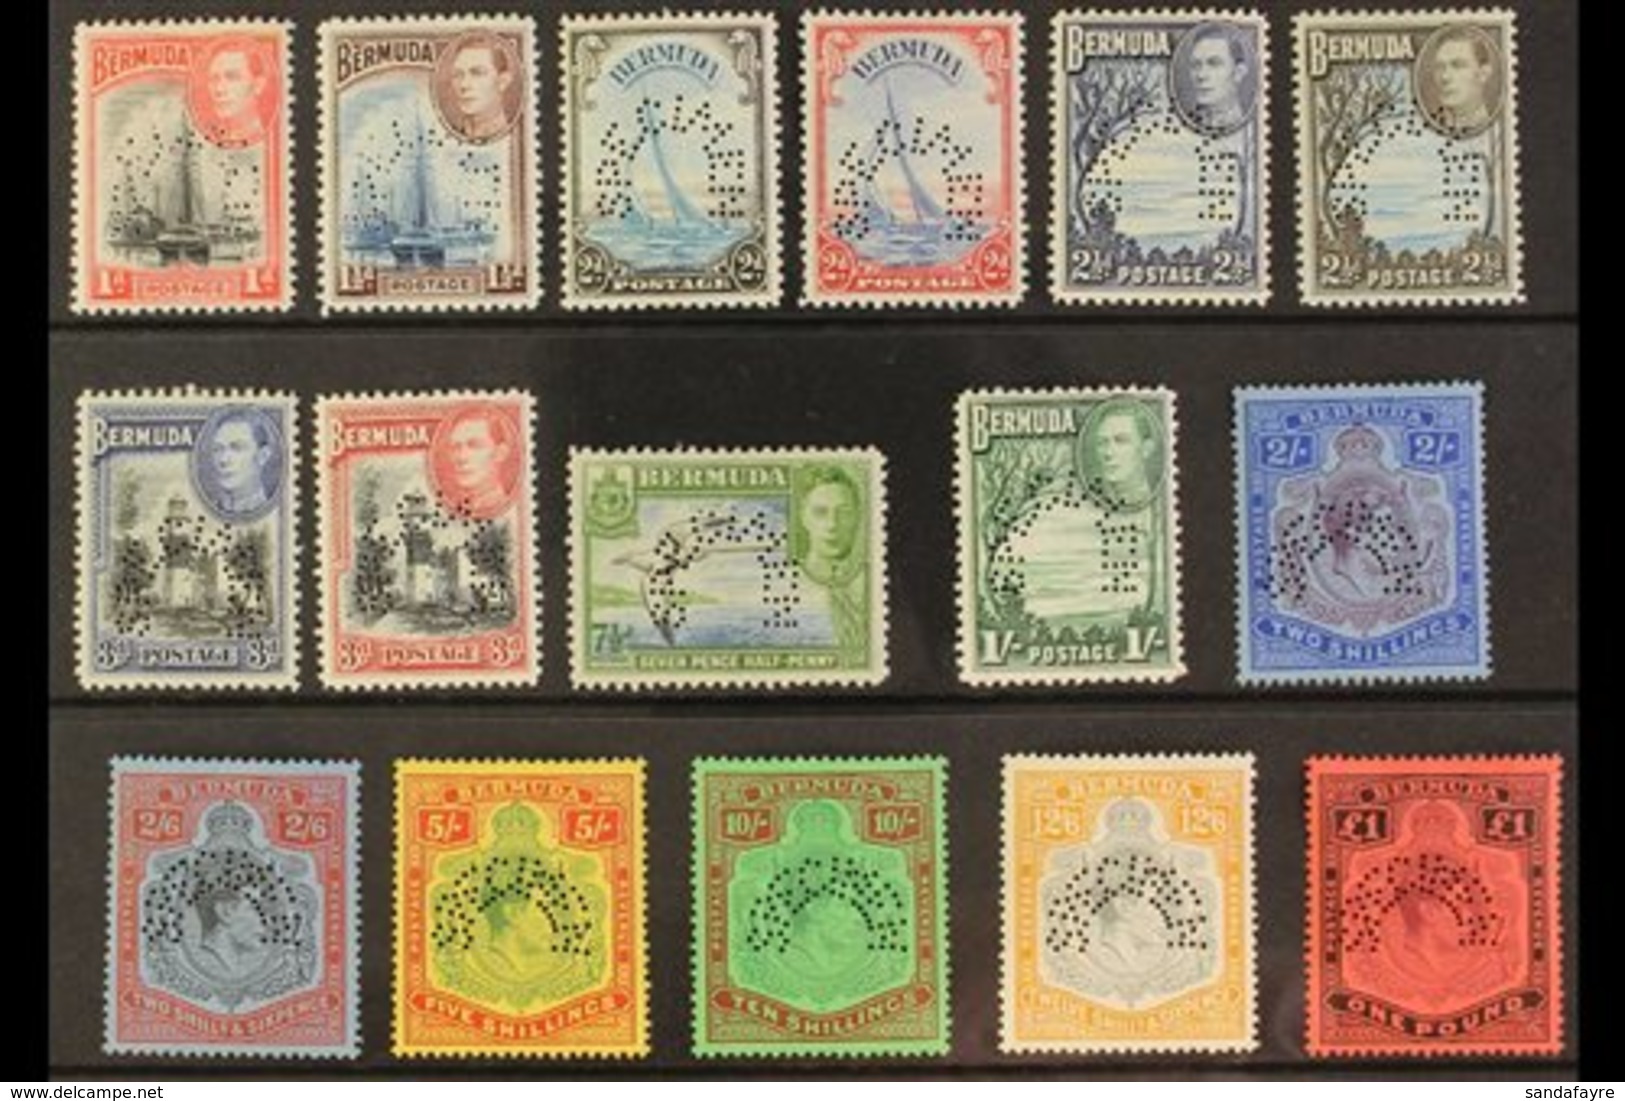 1938 Geo VI Set Complete, Perforated "Specimen", SG 110s/121ds, Very Fine Mint, Large Part Og. Rare Set. (16 Stamps) For - Bermuda